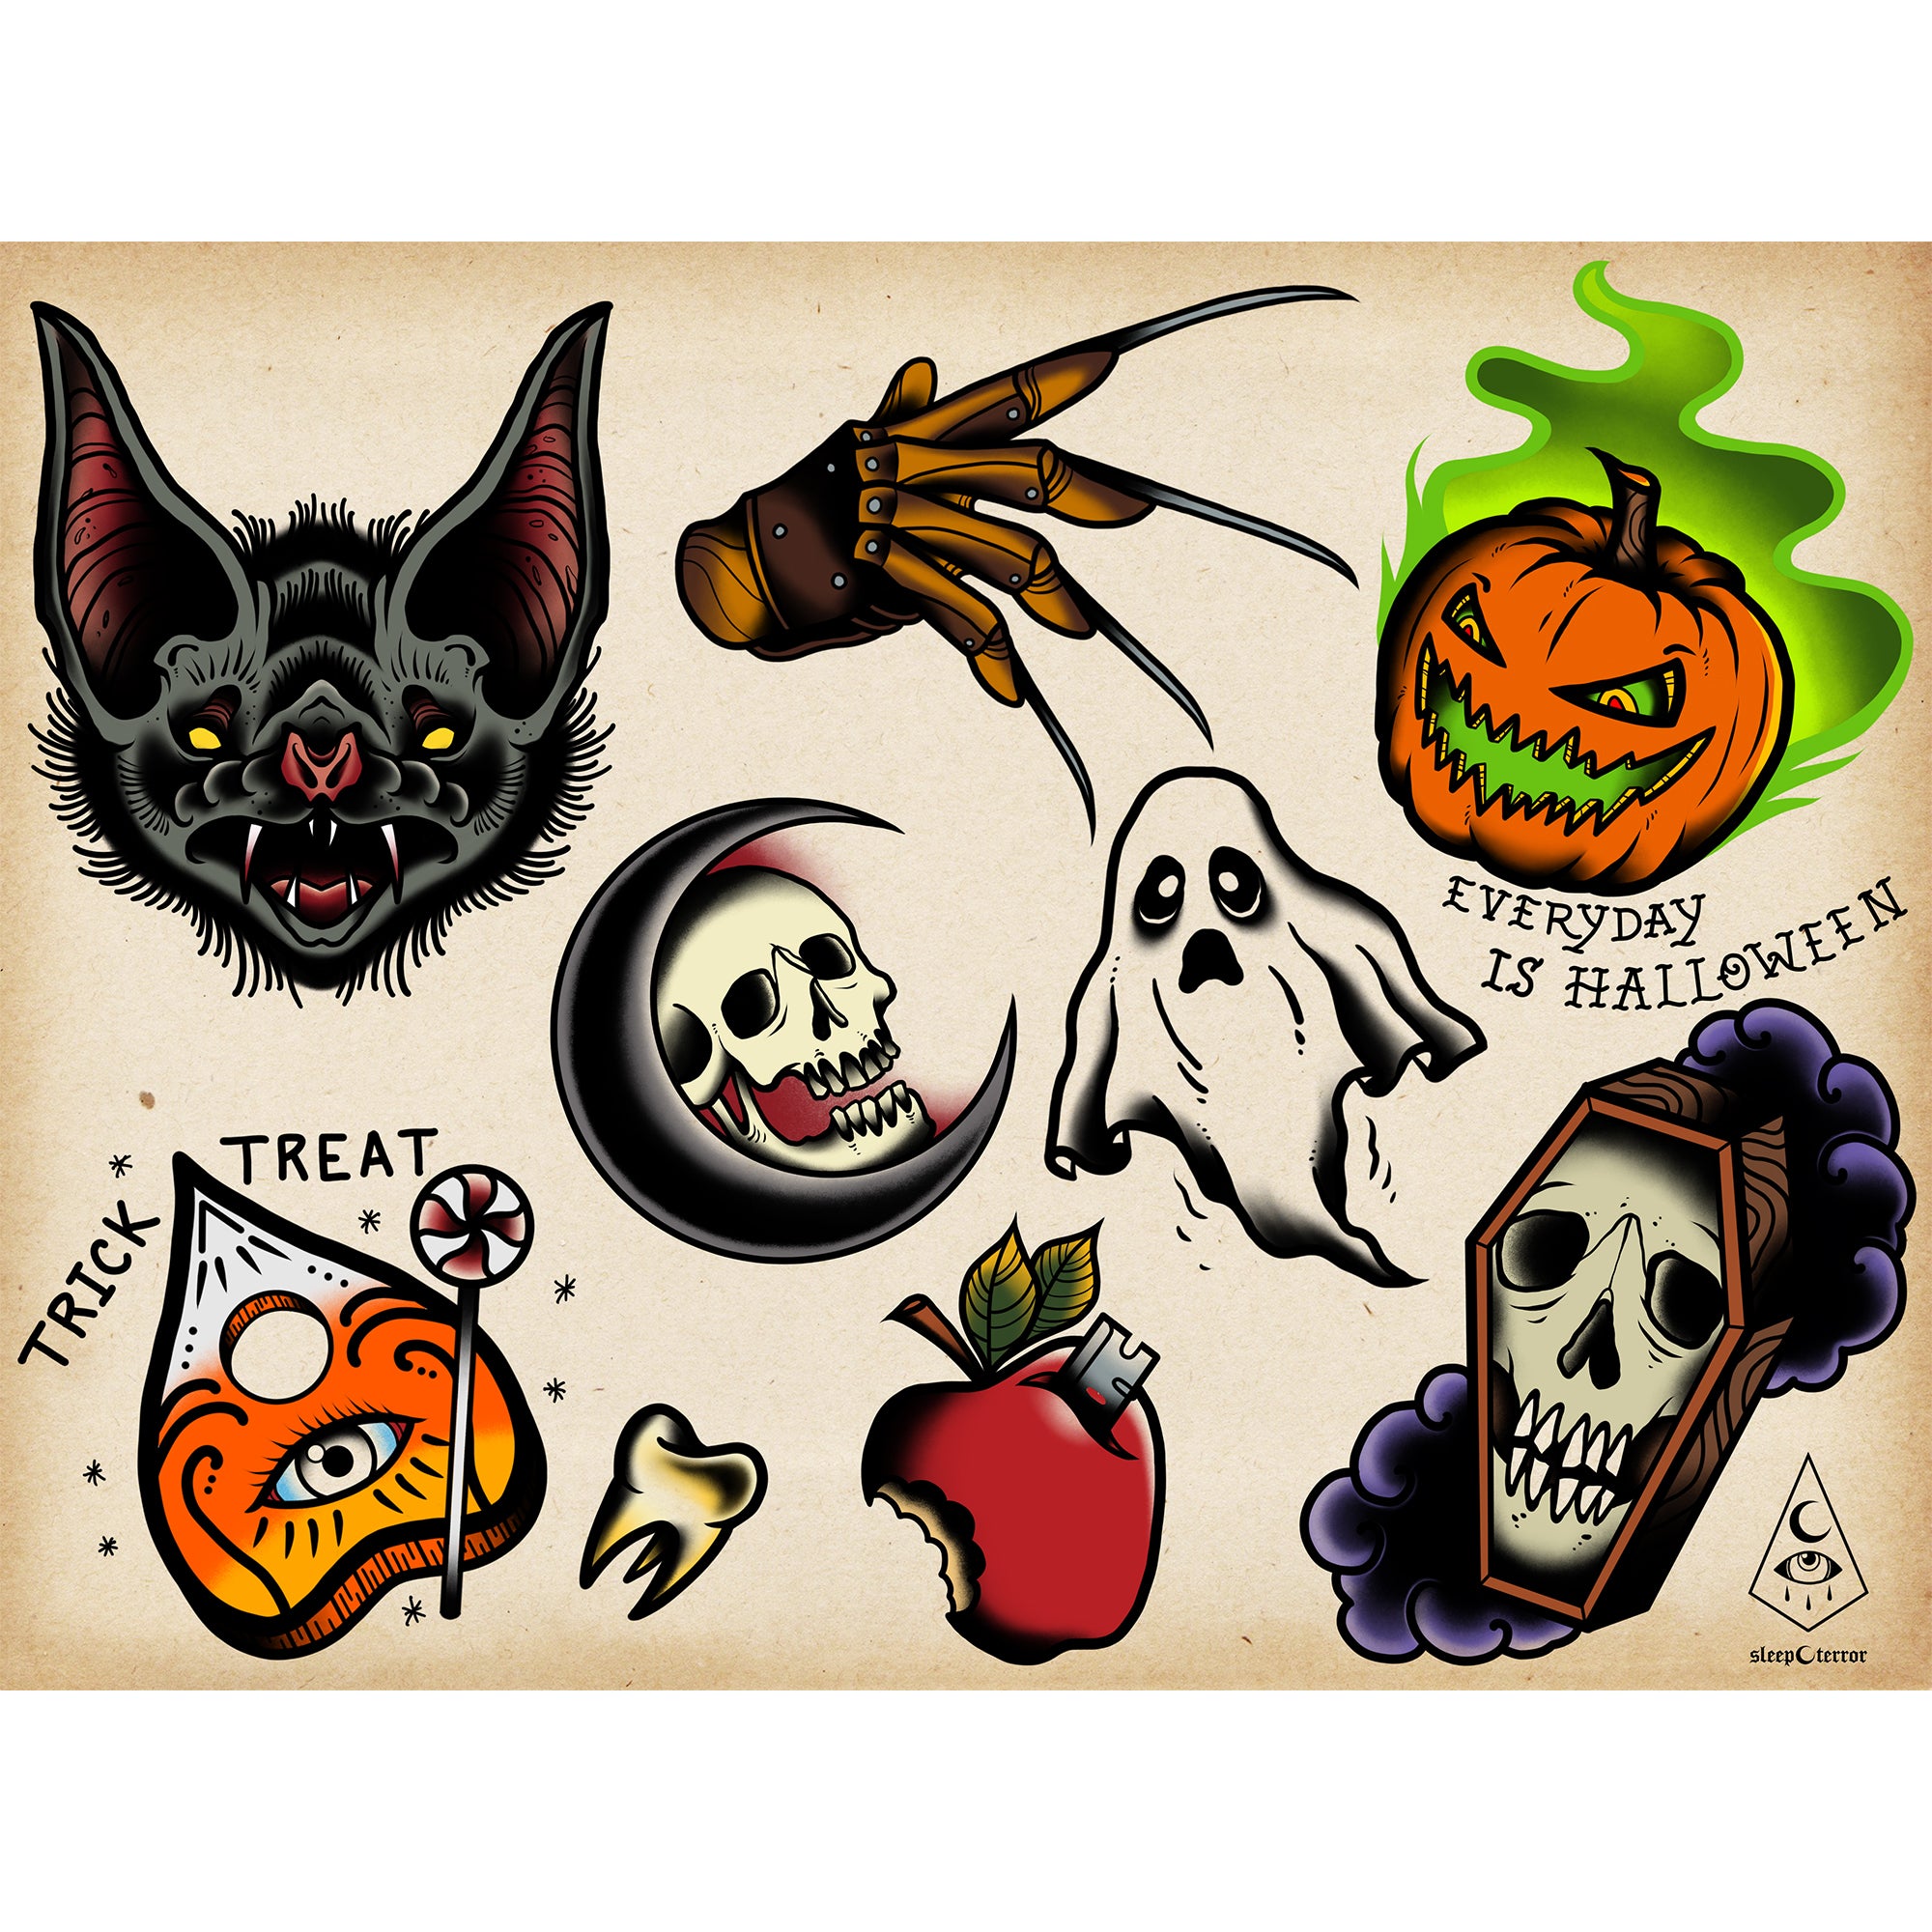 Every Day Is Halloween Tattoo Flash Sheet | Sleep Terror Co. Horror ...